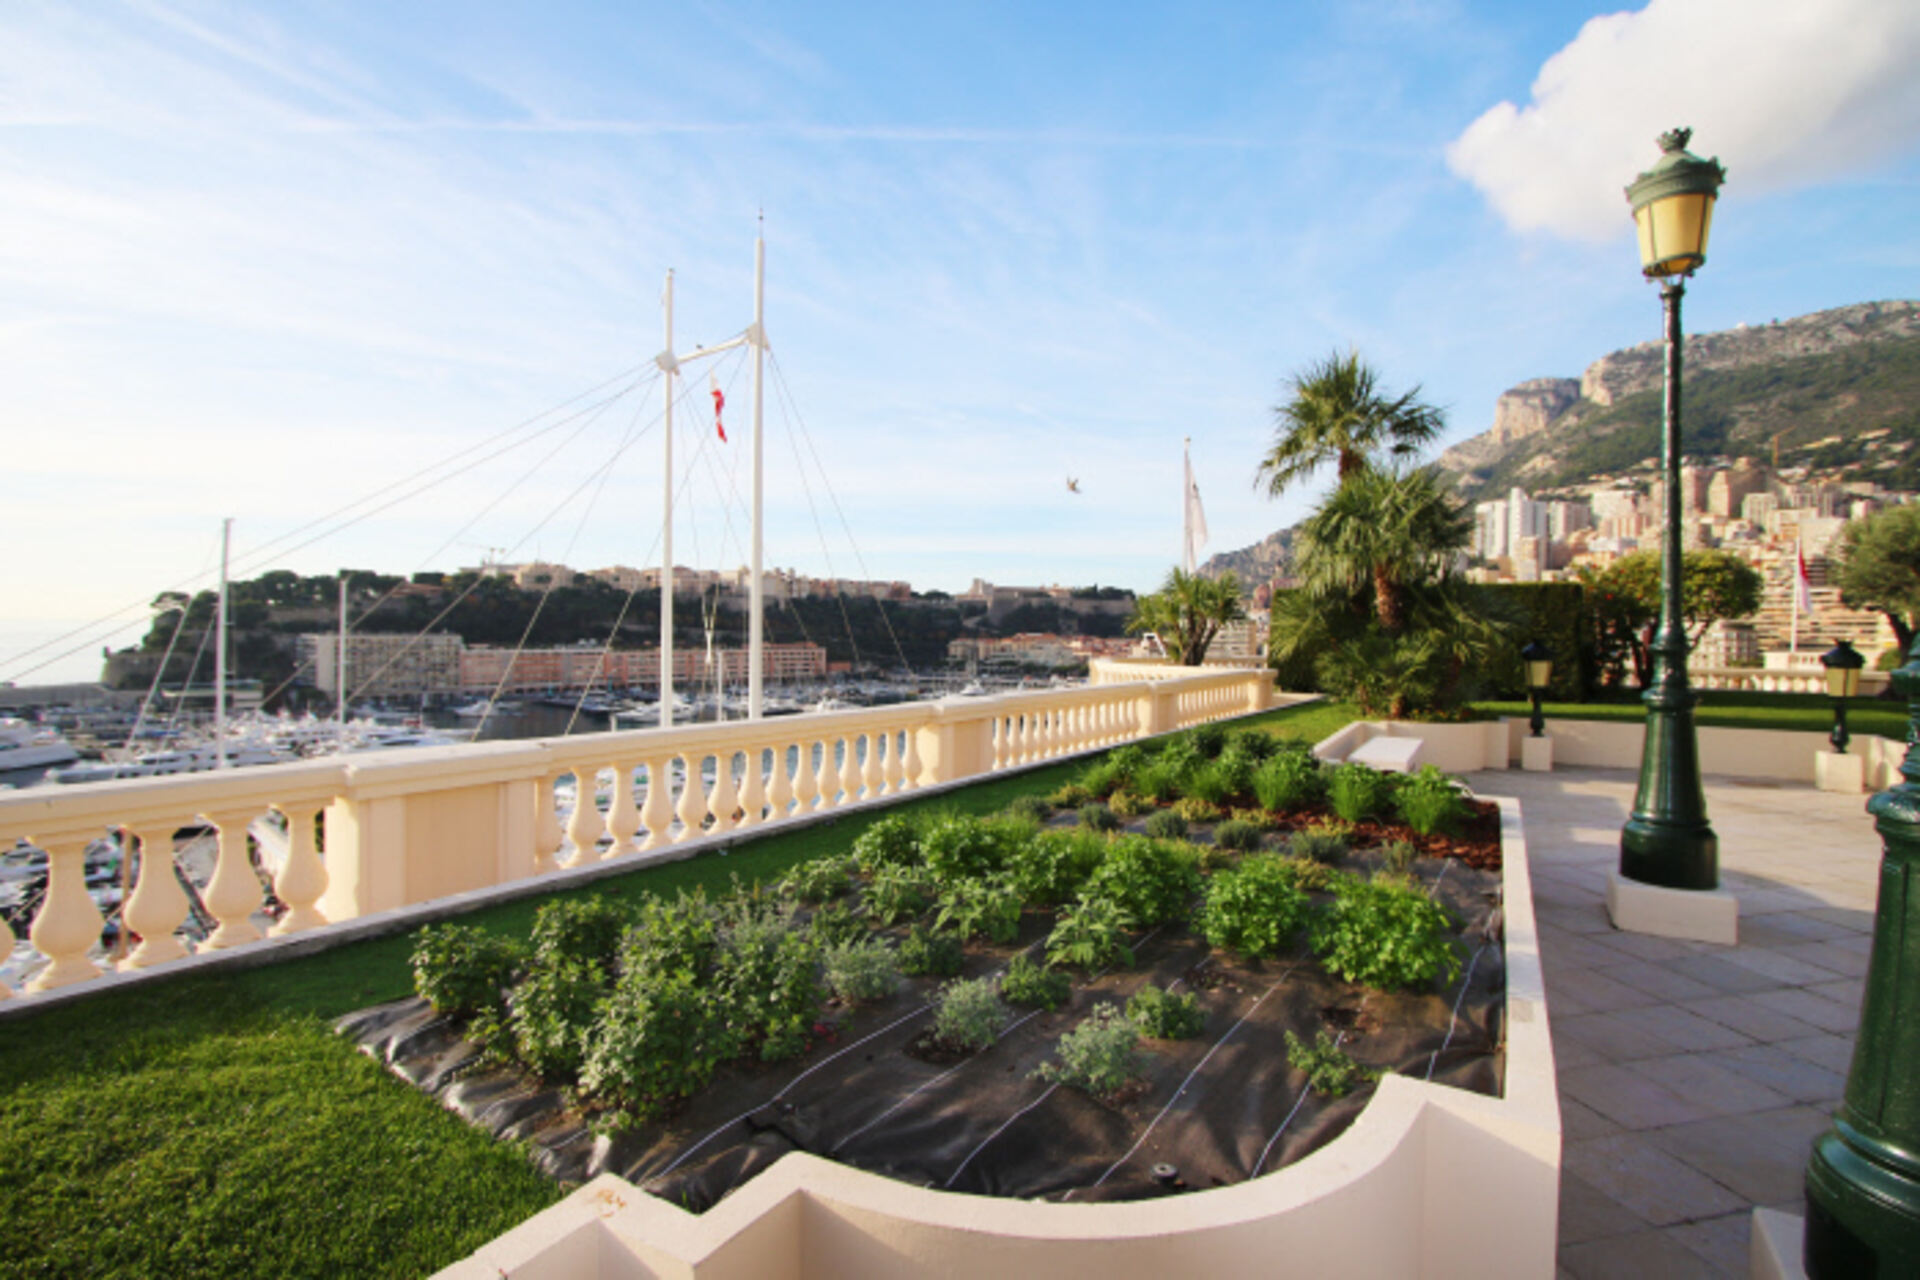 Société des Bains de Mer, Monte-Carlo'da sıfır kilometrelik sebze bahçeleriyle "yeşil" hedefler peşinde koşuyor